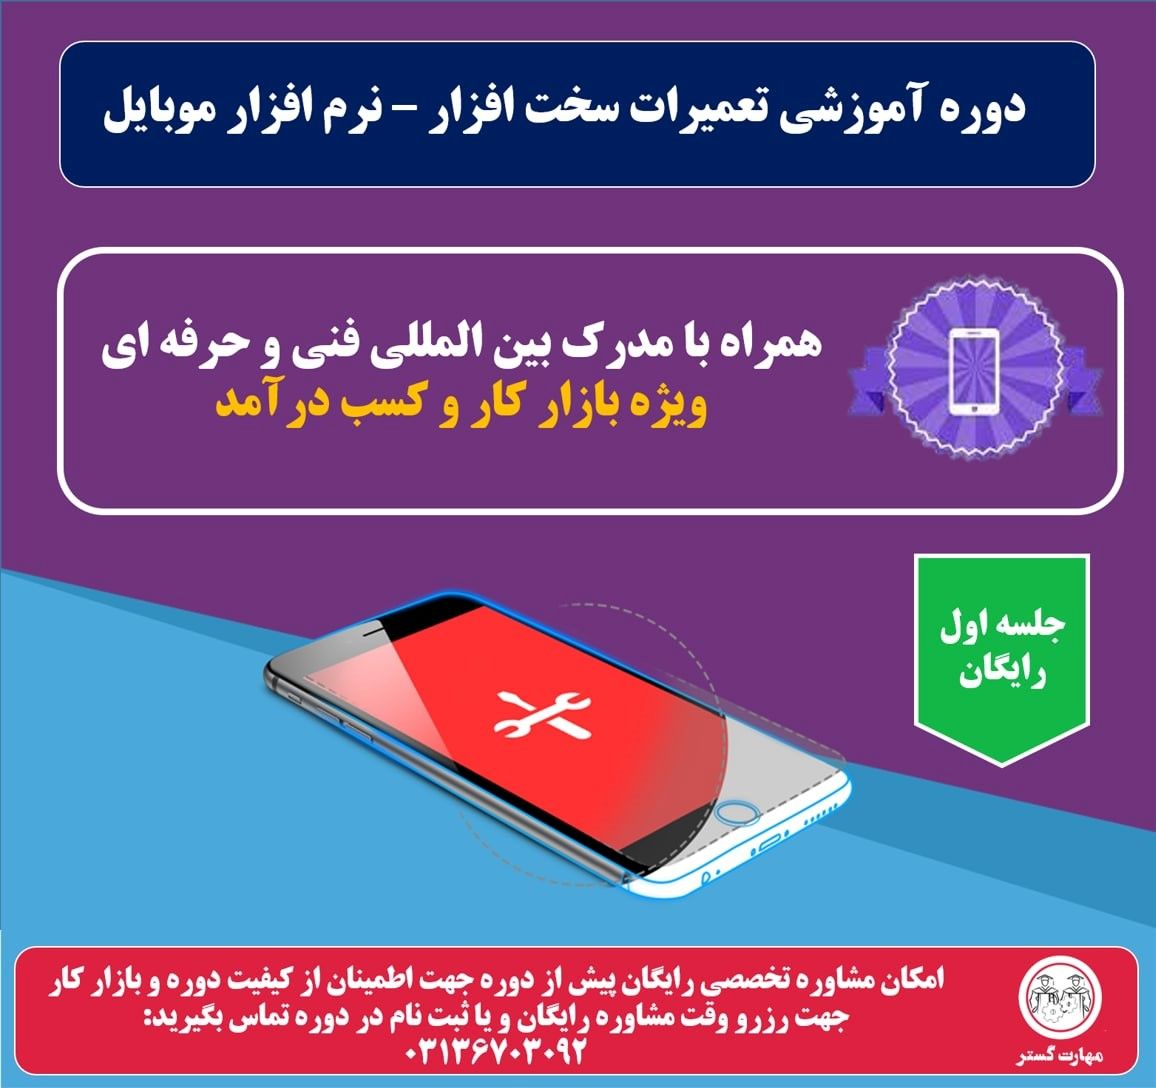 دوره آموزش تعمیر موبایل، حسابداری و ICDL در اصفهان با مهارت گستر